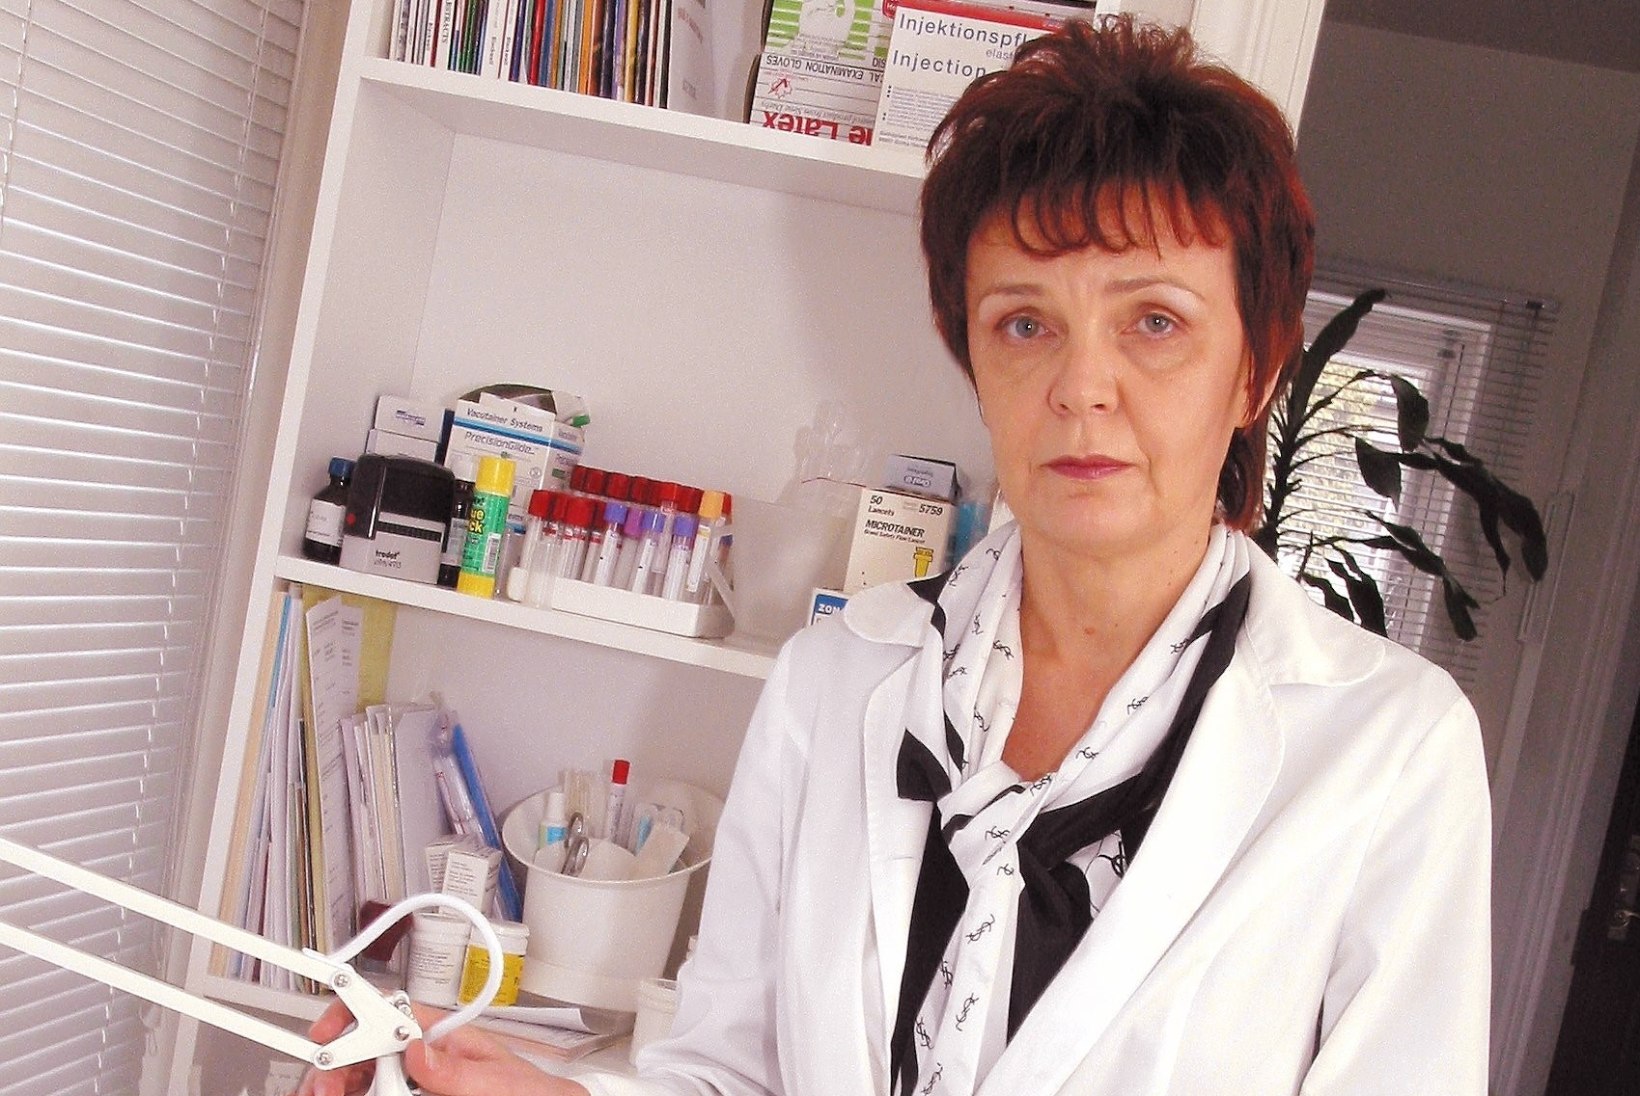 PALJU ÕNNE! Eesti arst pälvis ülemaailmse kõrge tunnustuse